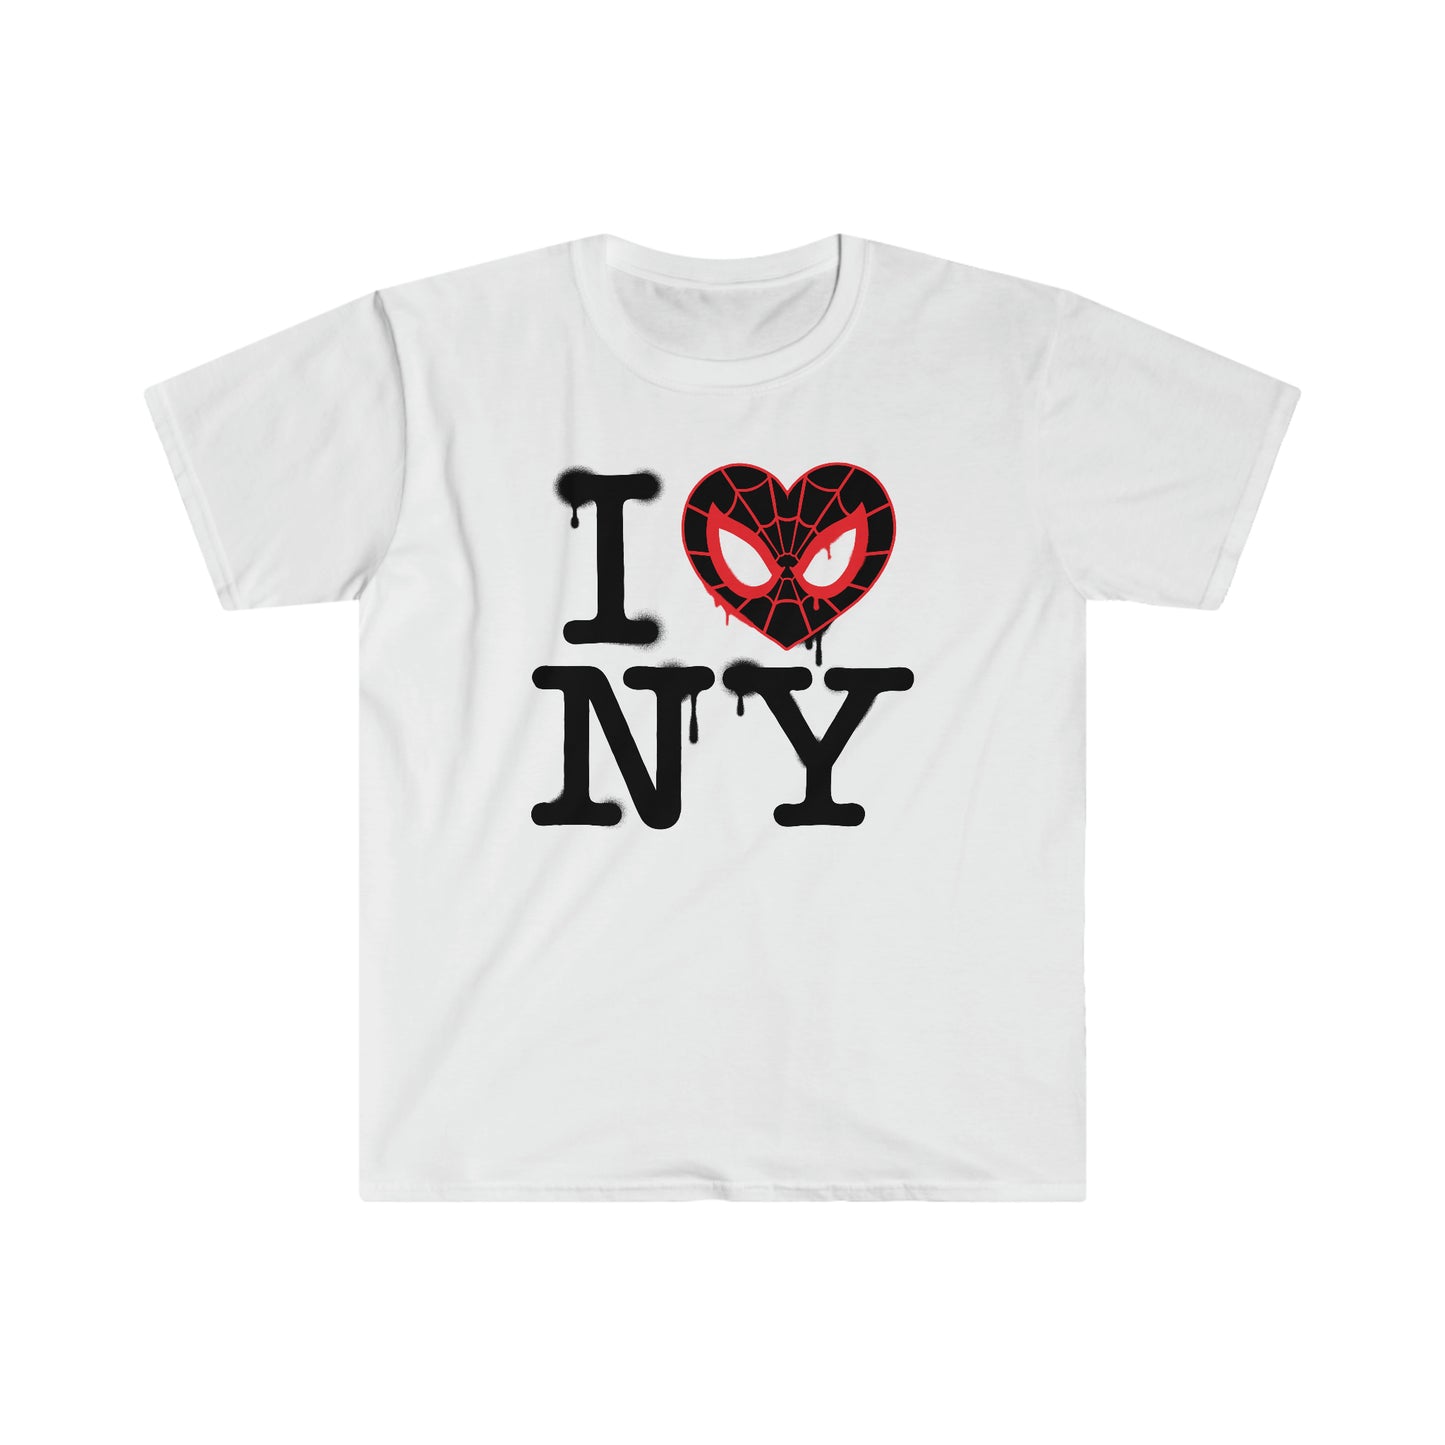 I Miles NY t-shirt